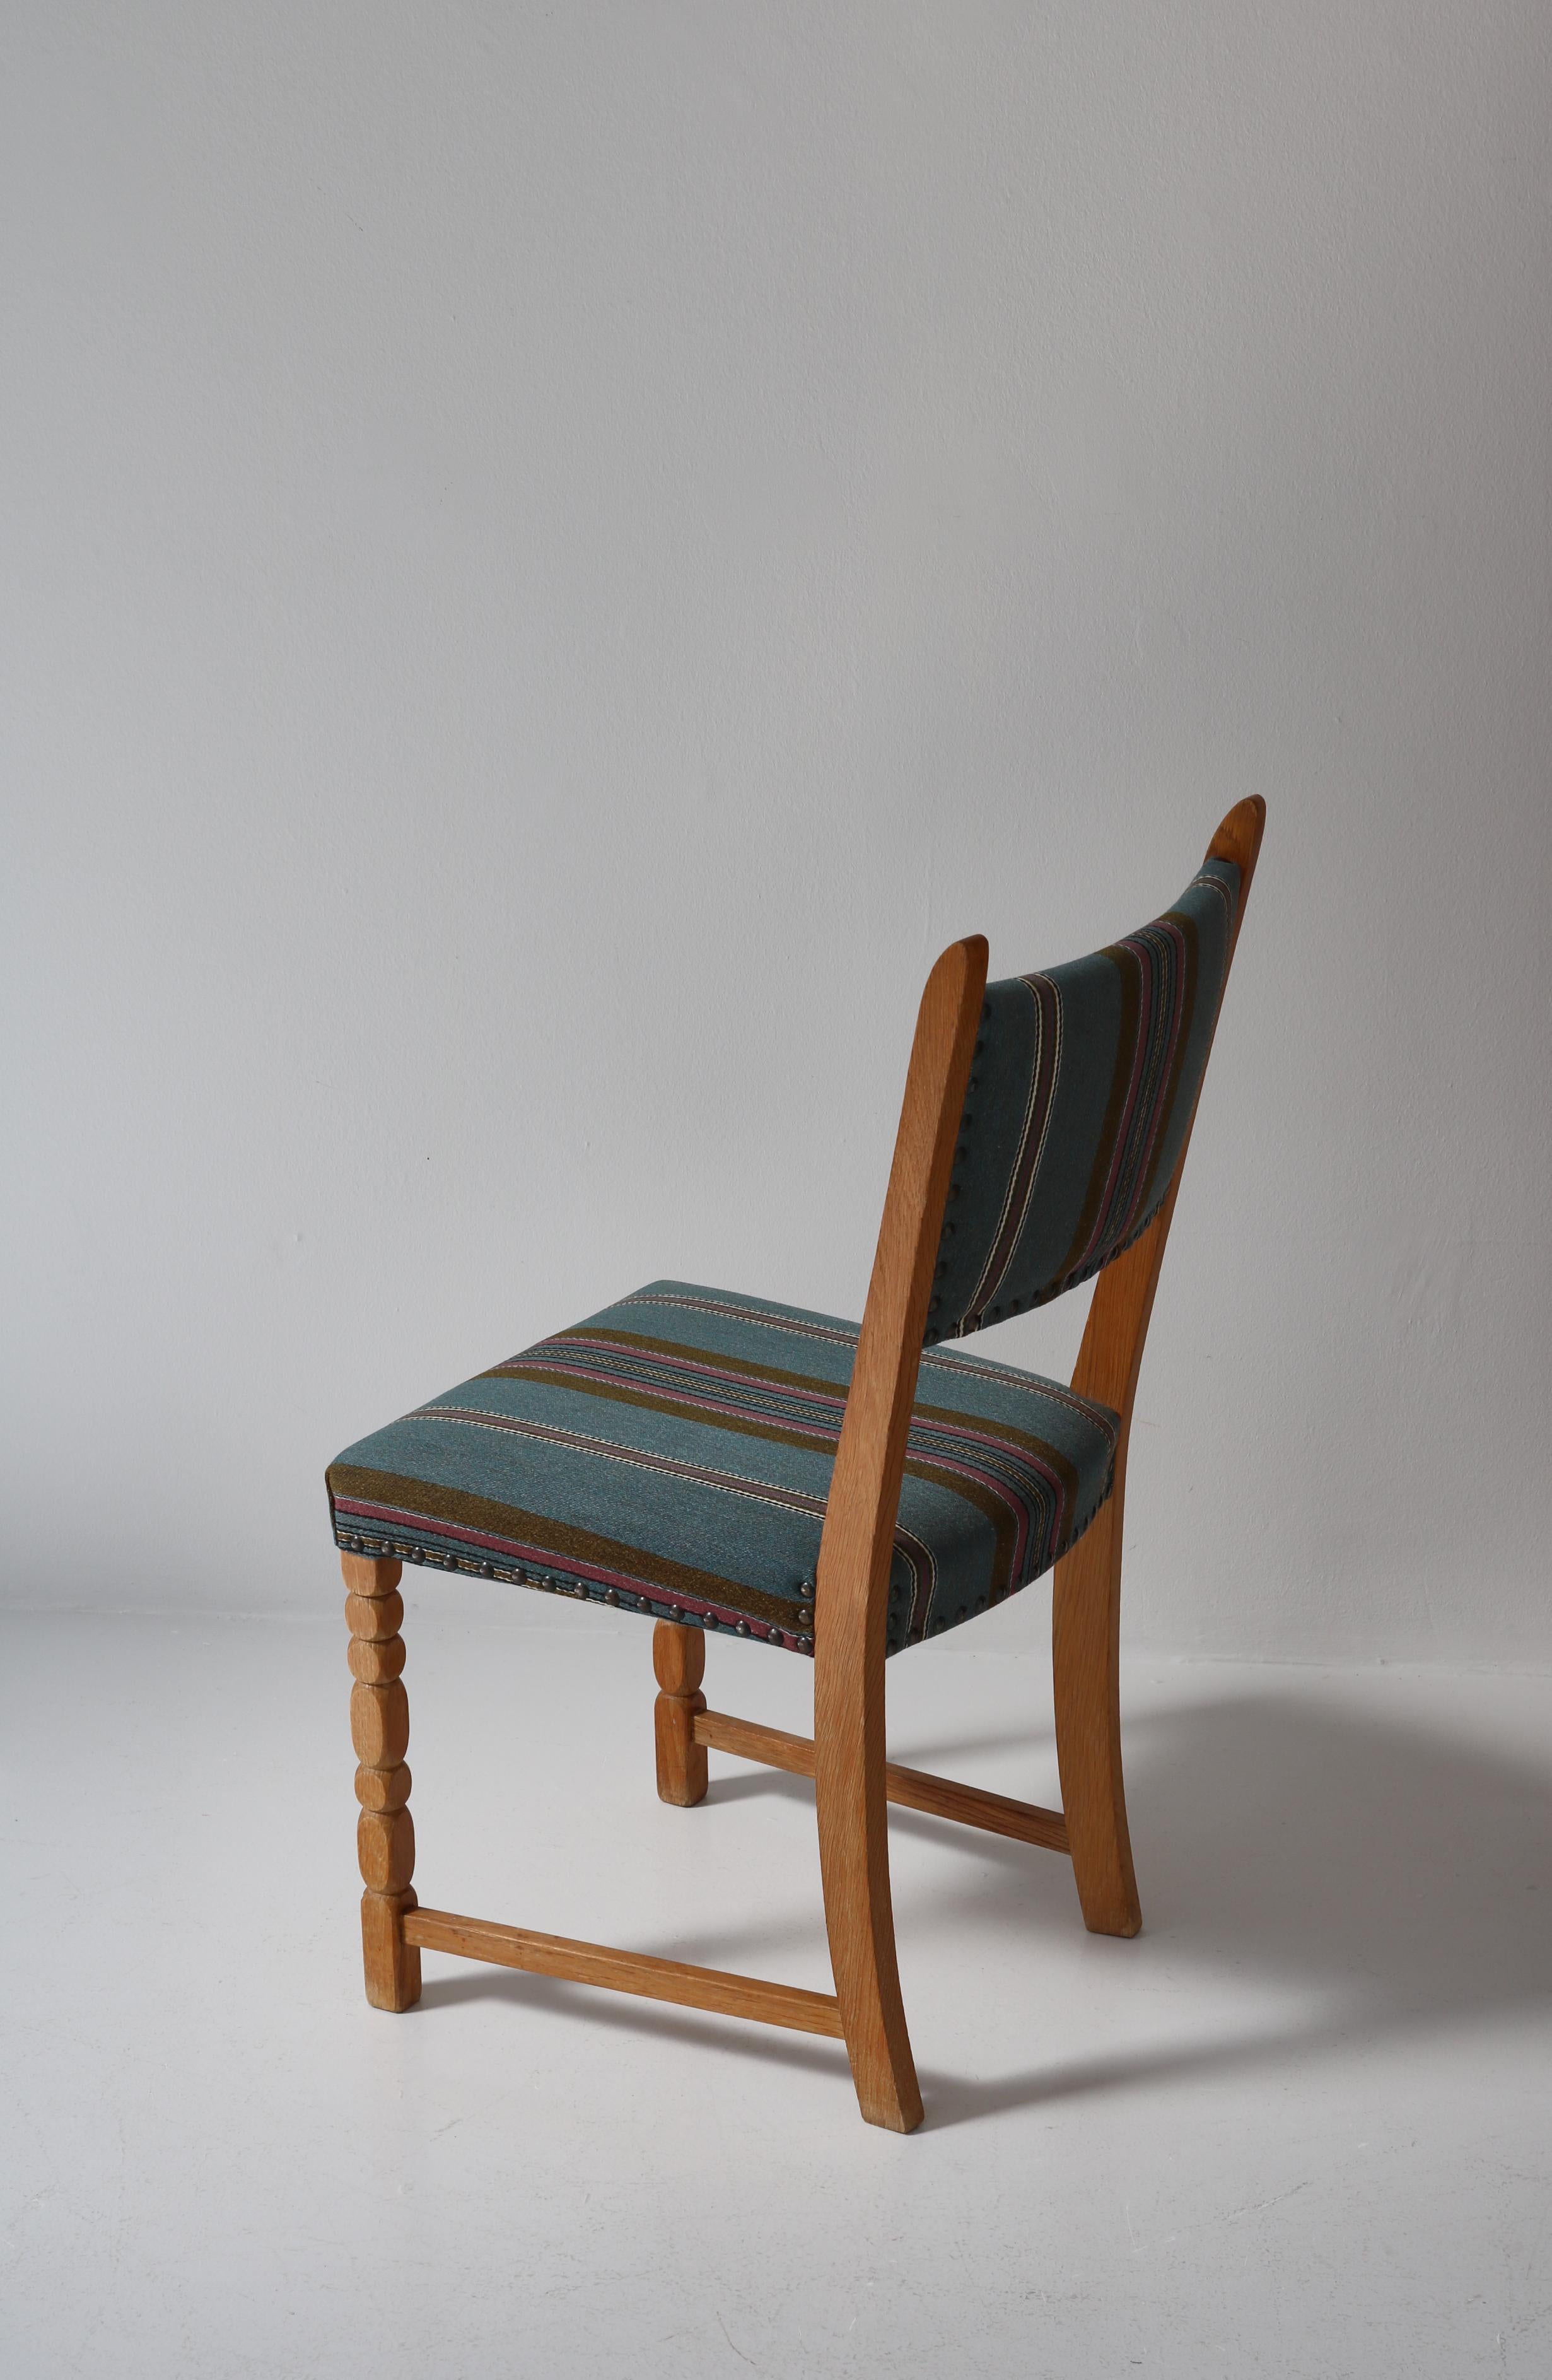 1960s Side Chair in Oak & Wool Fabric by Henry Kjærnulf, Danish Modern For Sale 6